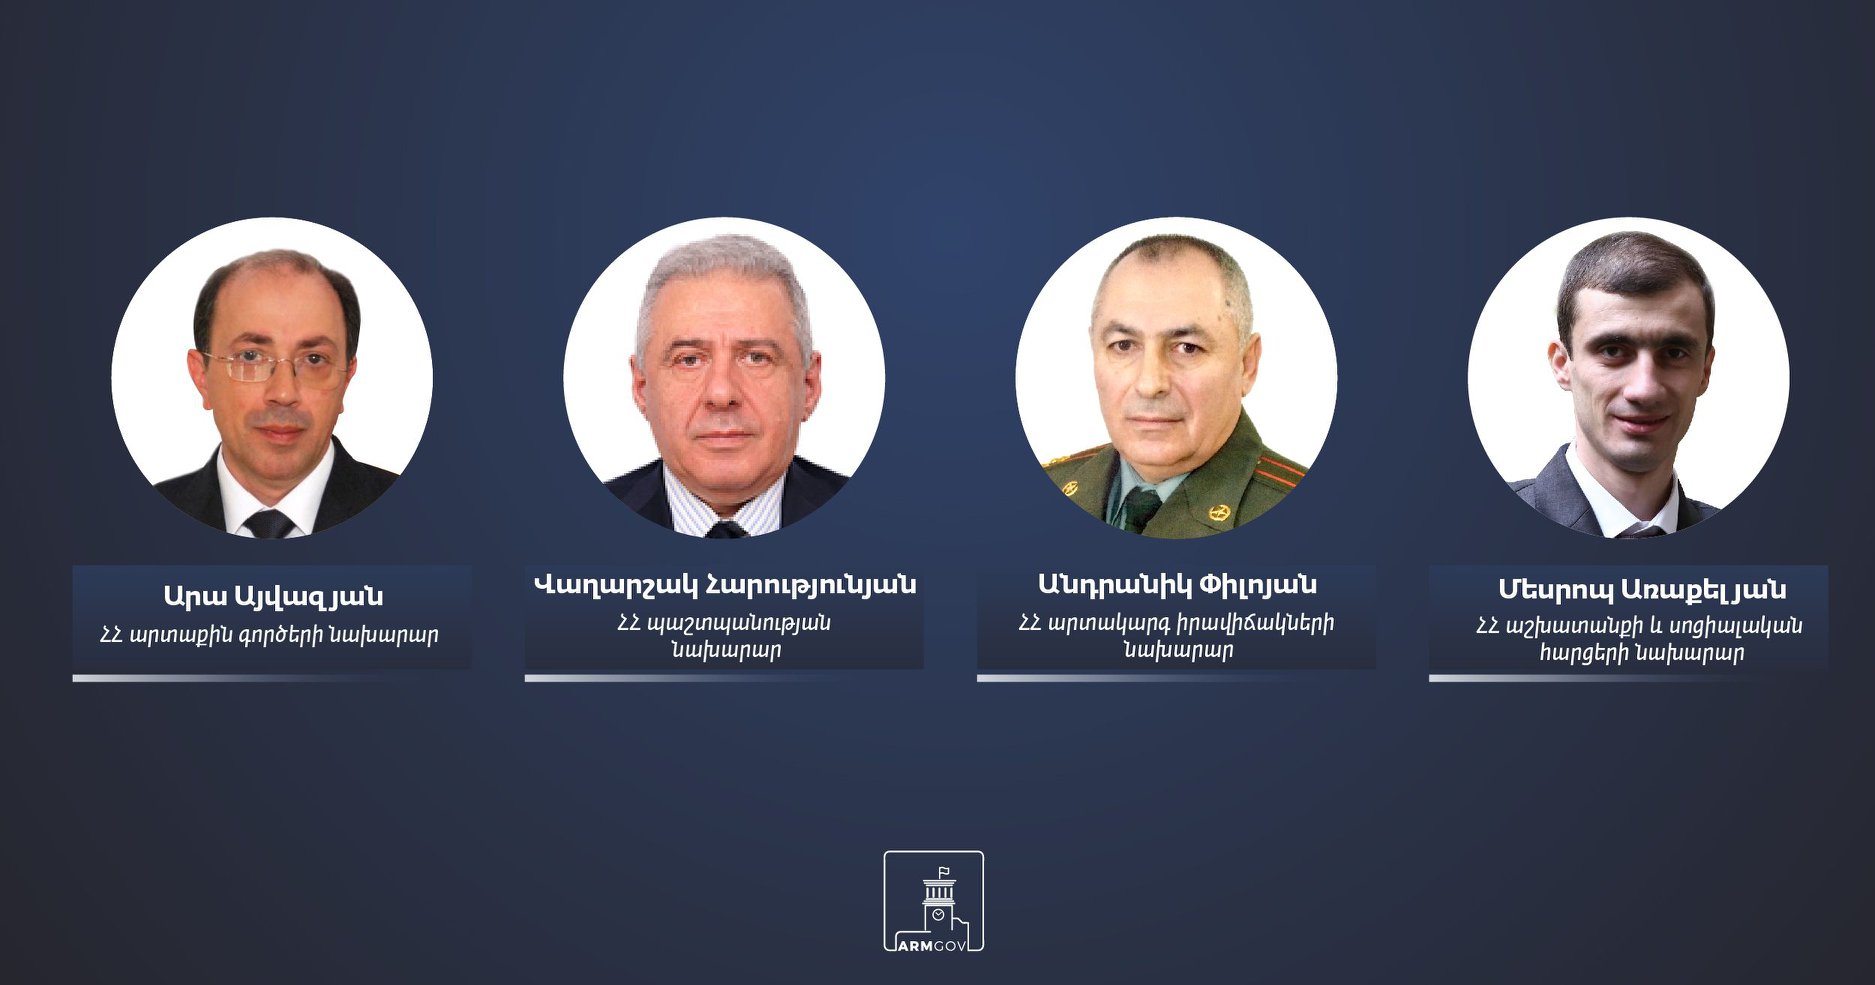 Ermenistan’da dört bakan görevden alındı